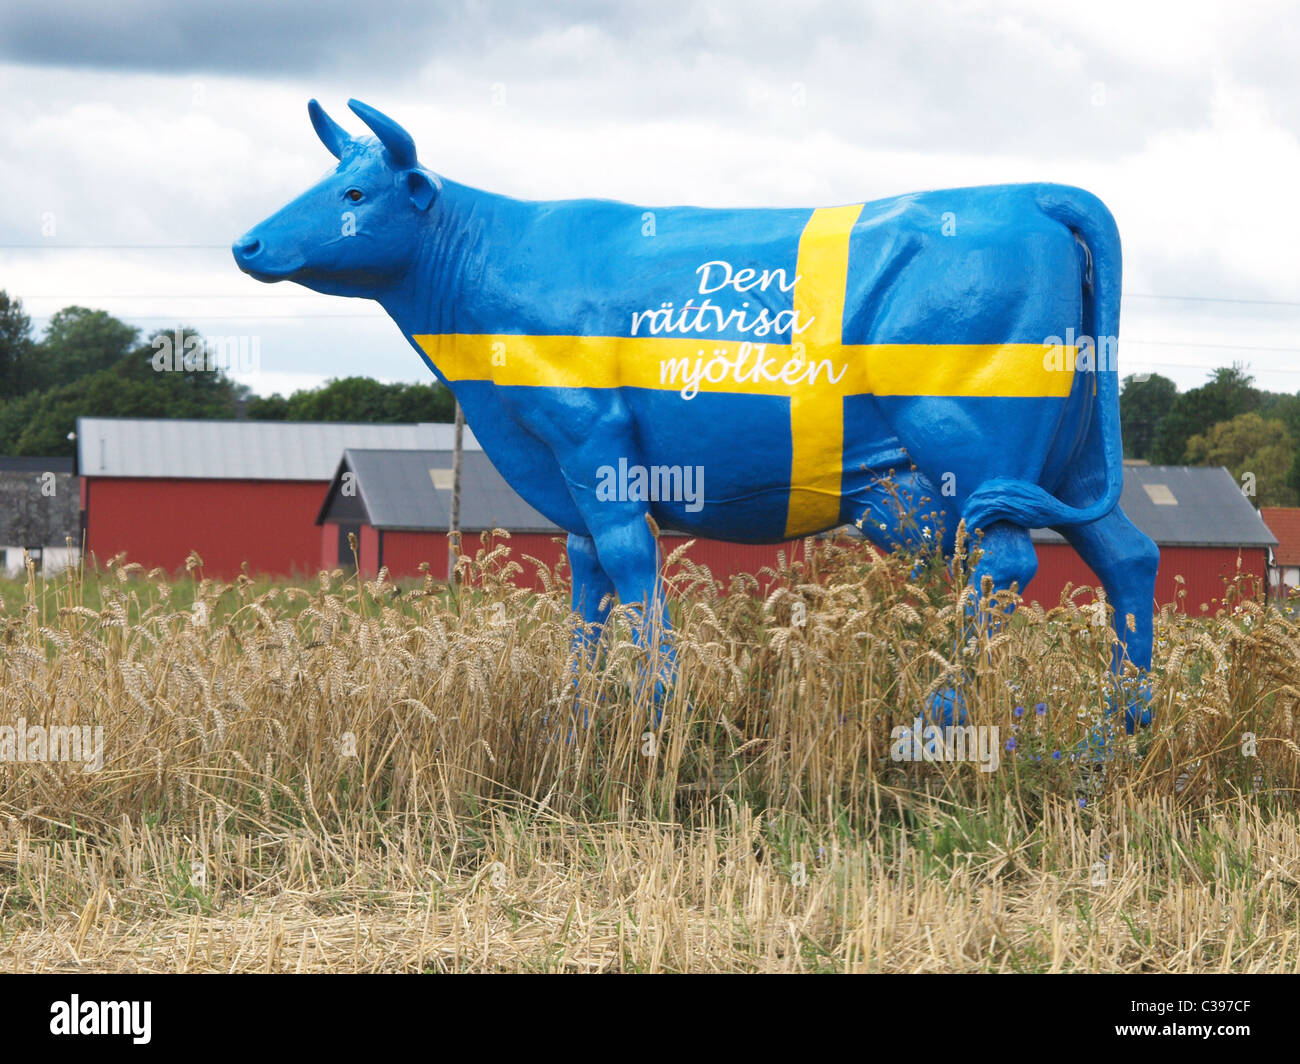 Abbildung einer Kuh in Landesfarben Schwedens, Scania, Schweden Stockfoto